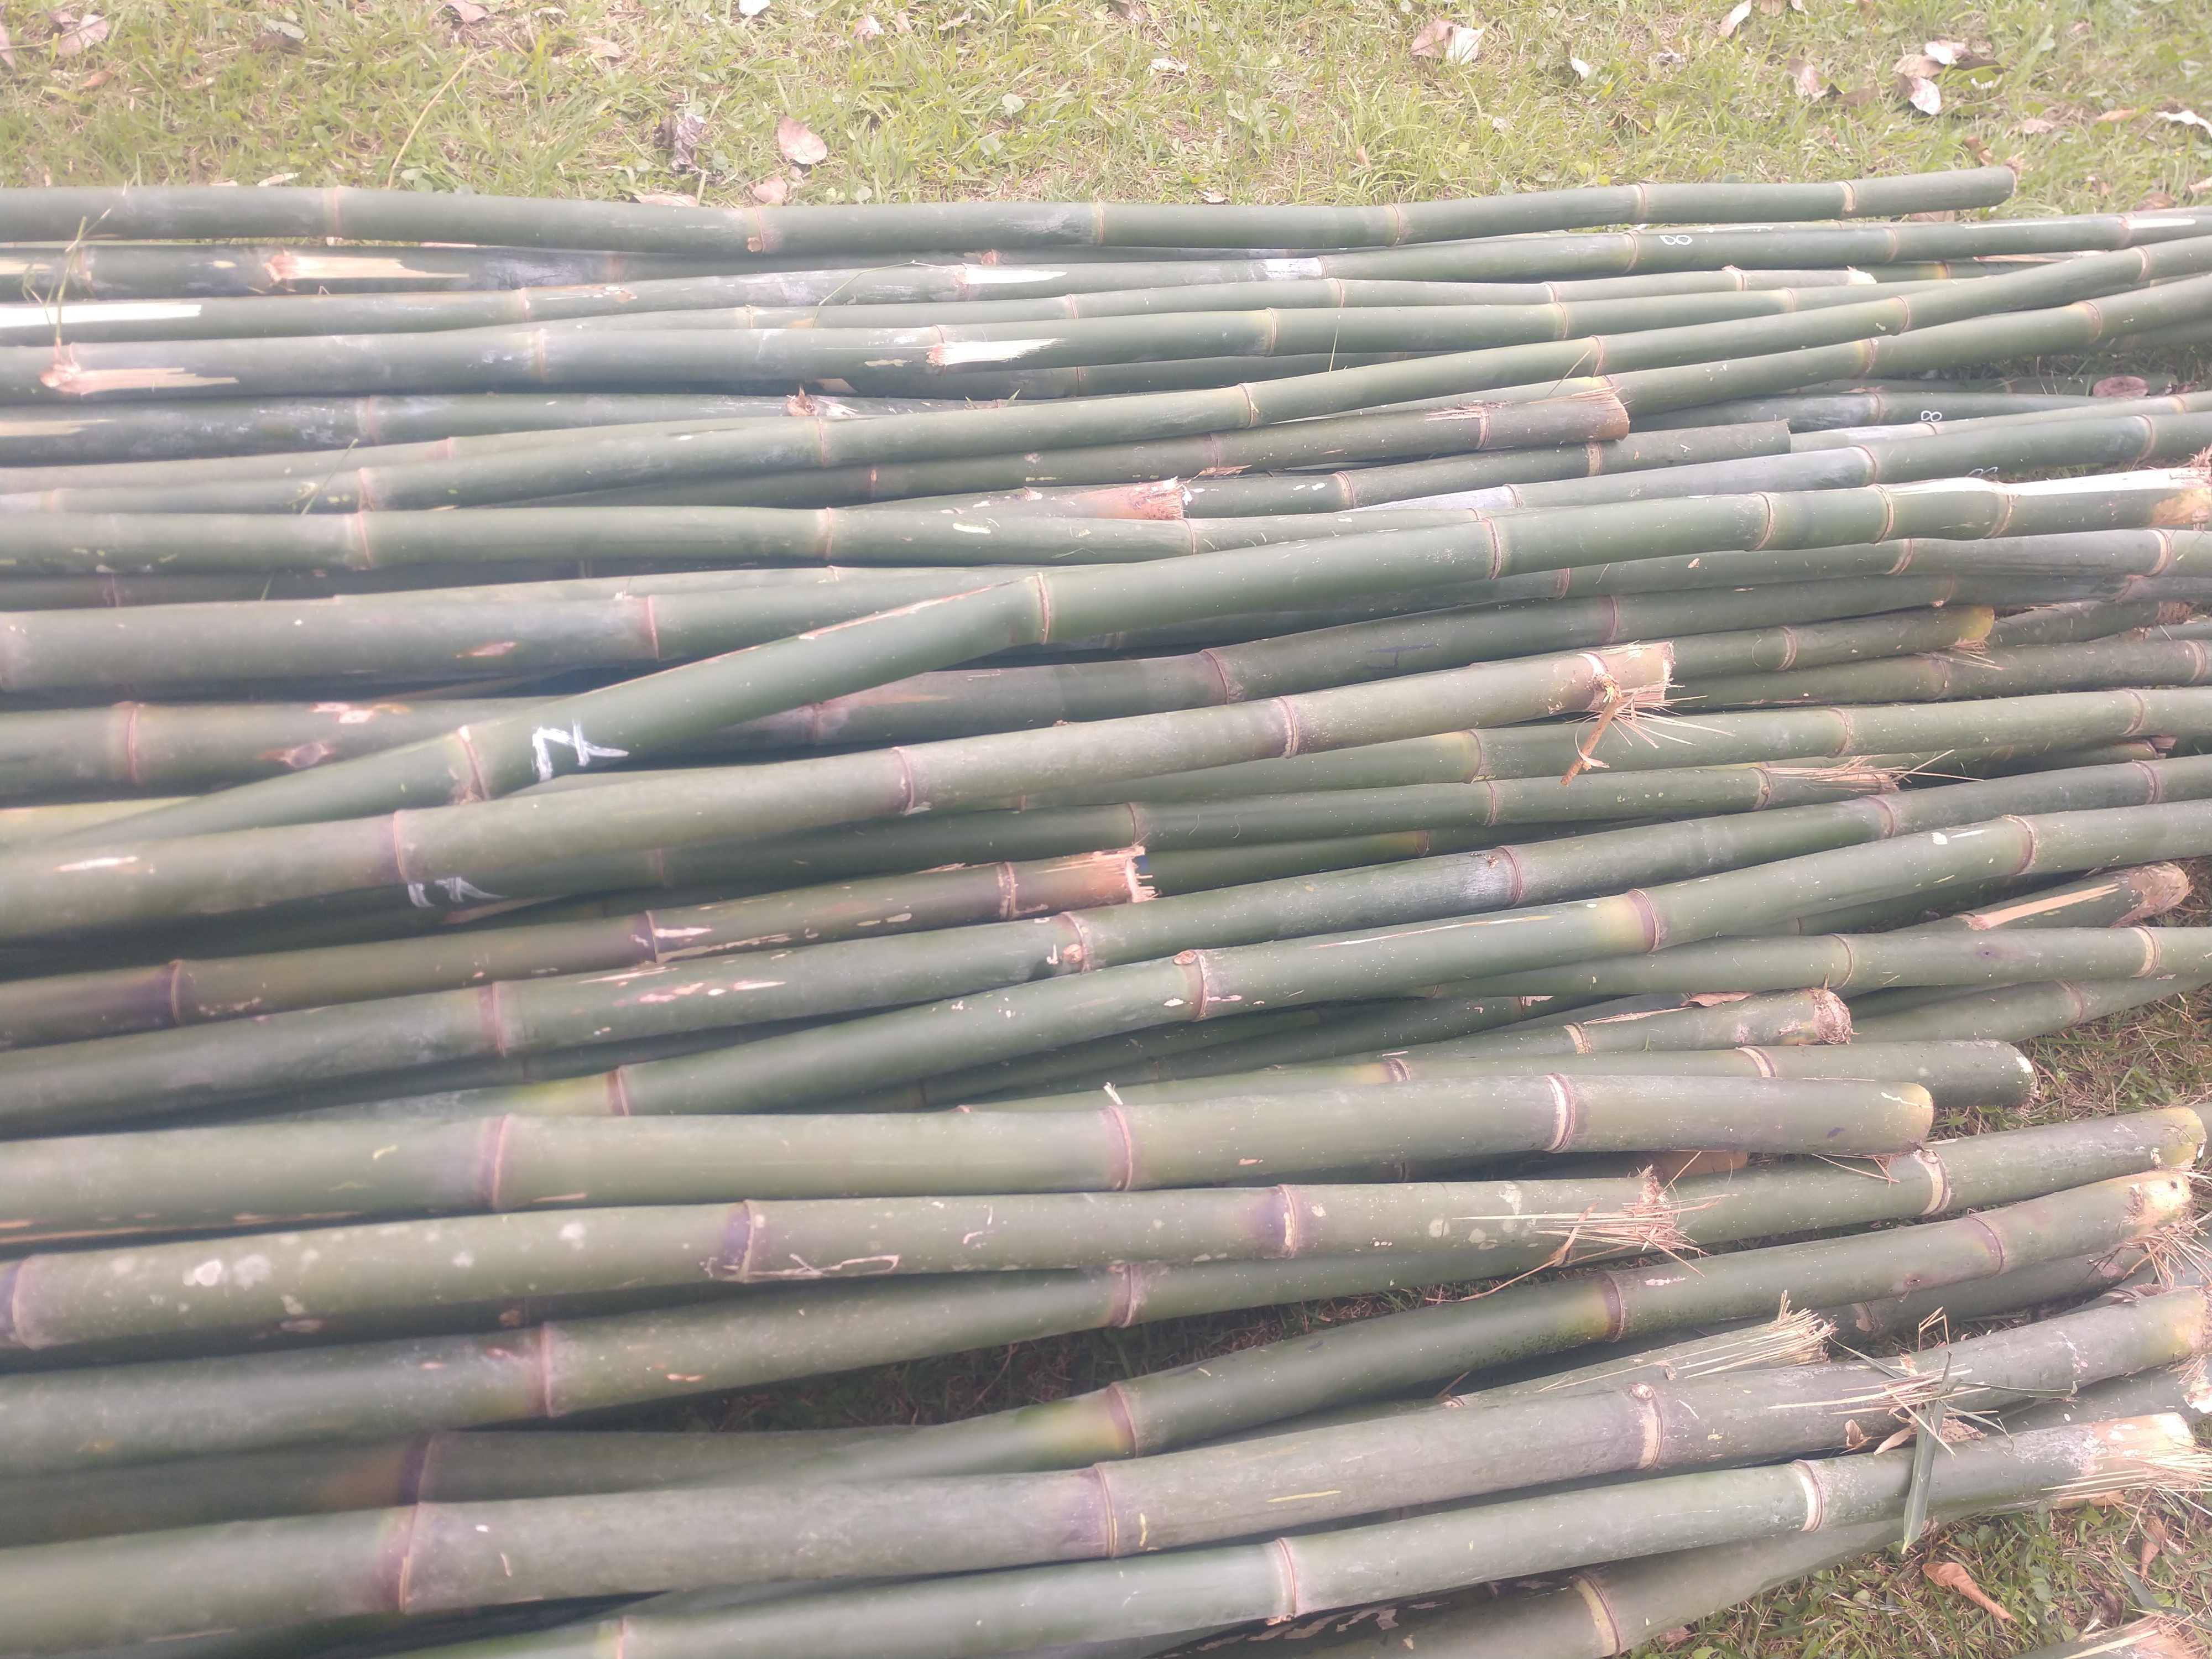 20190719 Fazenda Bambusa tuldoides touceira a ser removida para obra nova adm estrutura (9) bambus cortados maduros